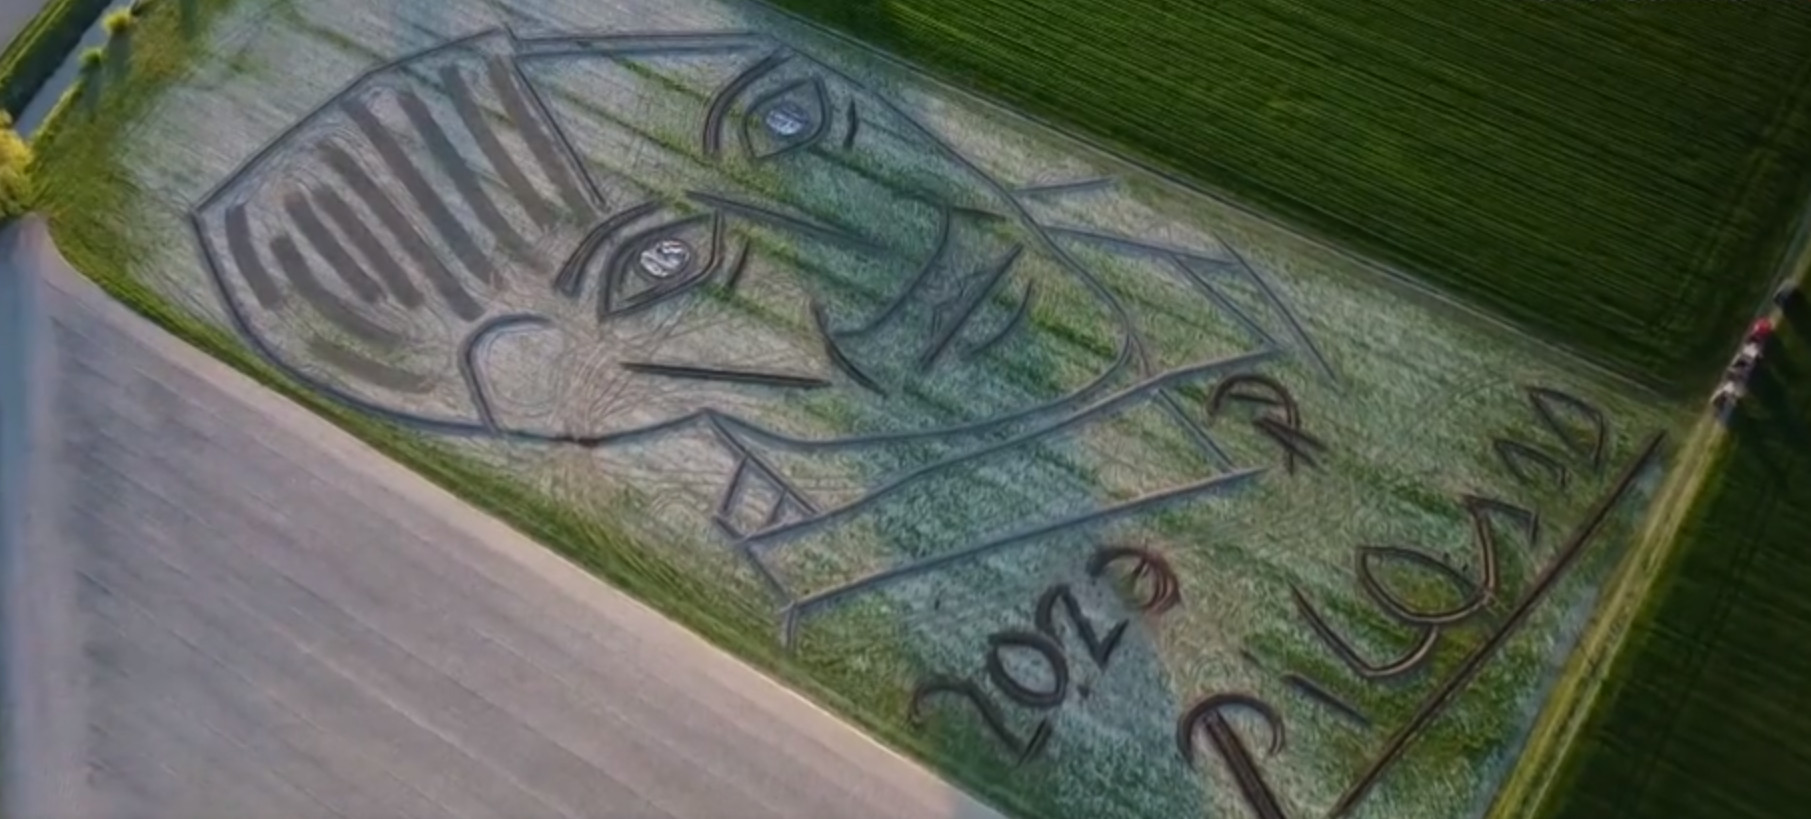 Ιταλός καλλιτέχνης ζωγράφισε με το τρακτέρ του πορτρέτο του Πικάσο σε χωράφι